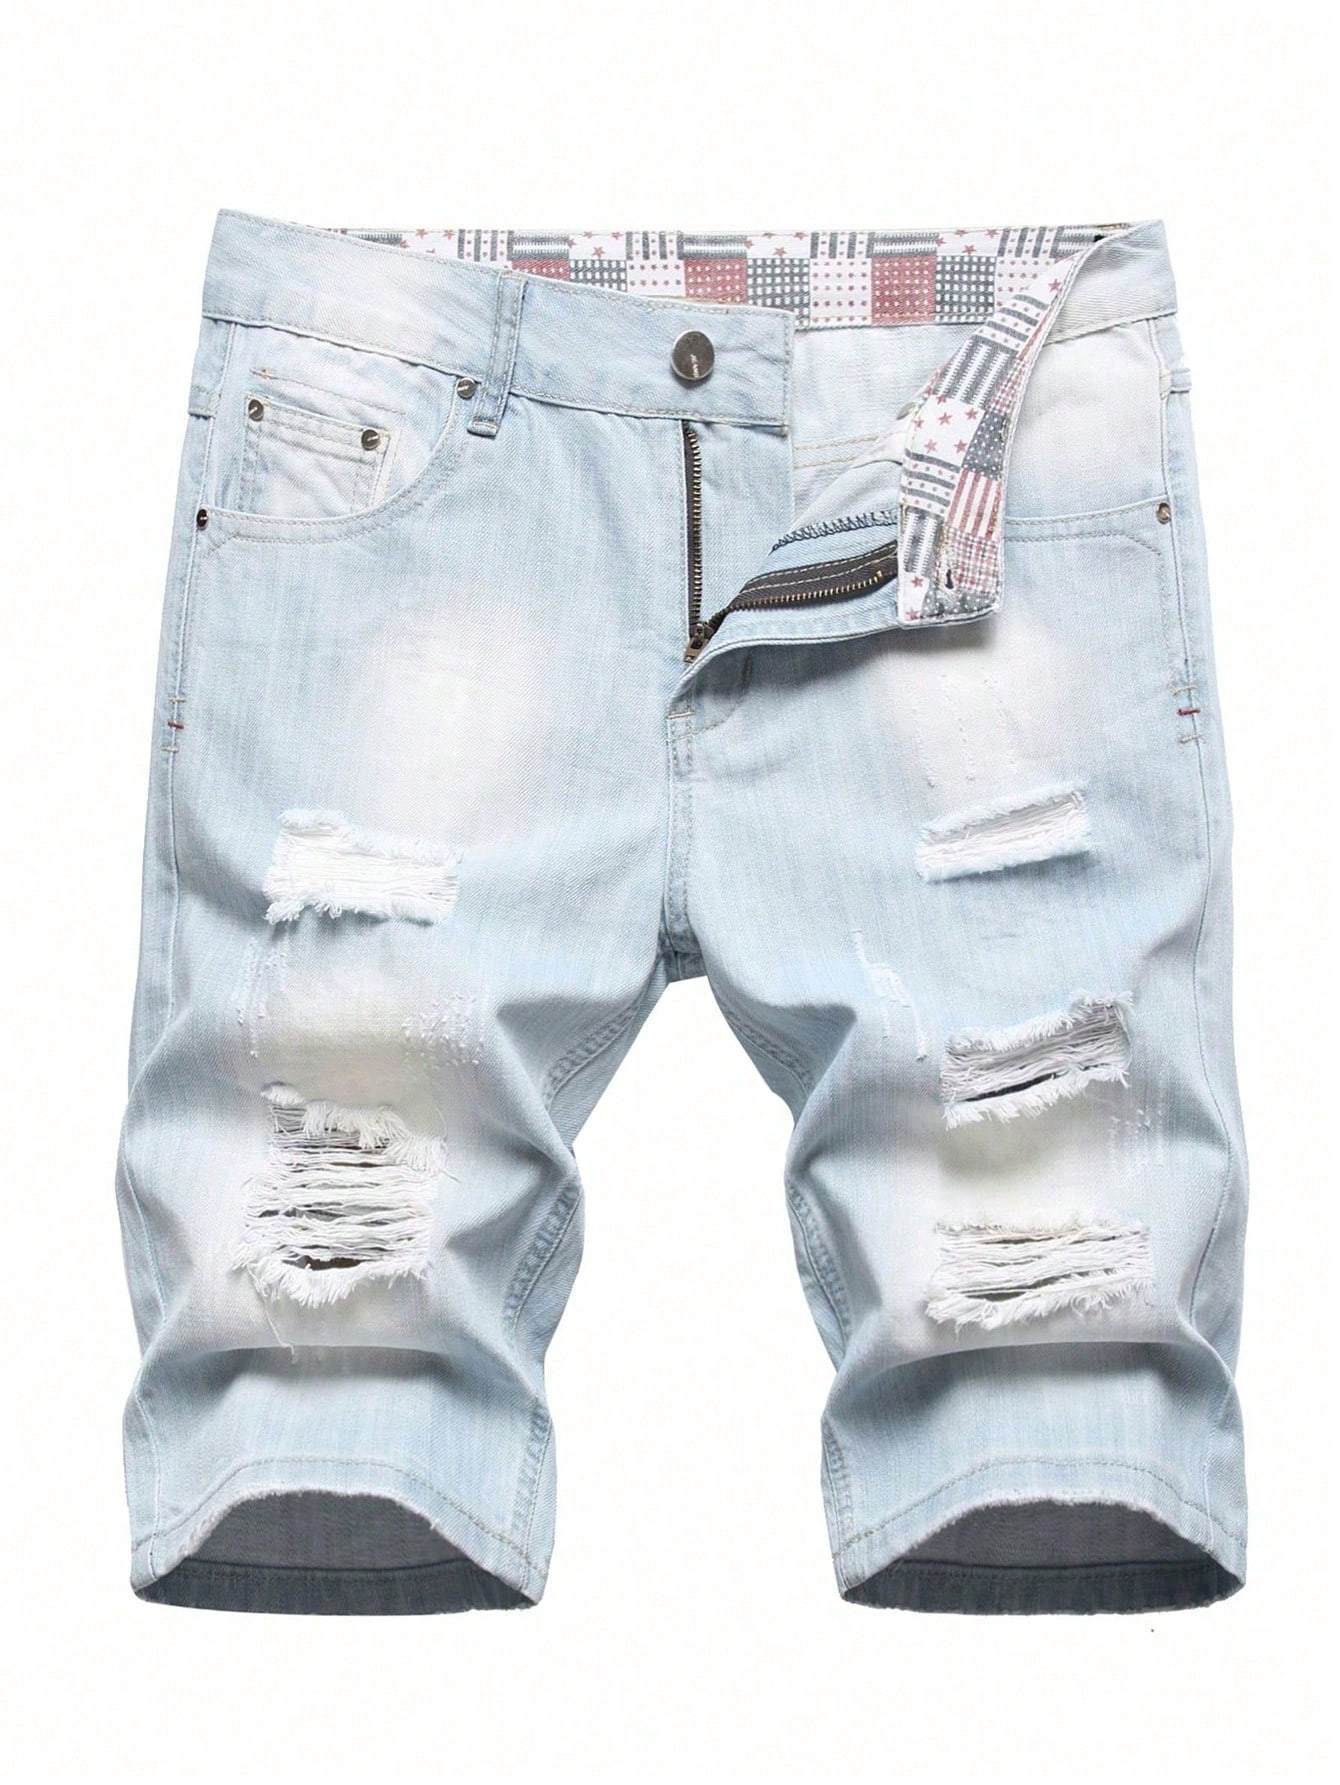 Мужские джинсовые шорты с потертостями, потертые, легкая стирка джинсовые шорты thoshort с эффектом потертостей diesel синий